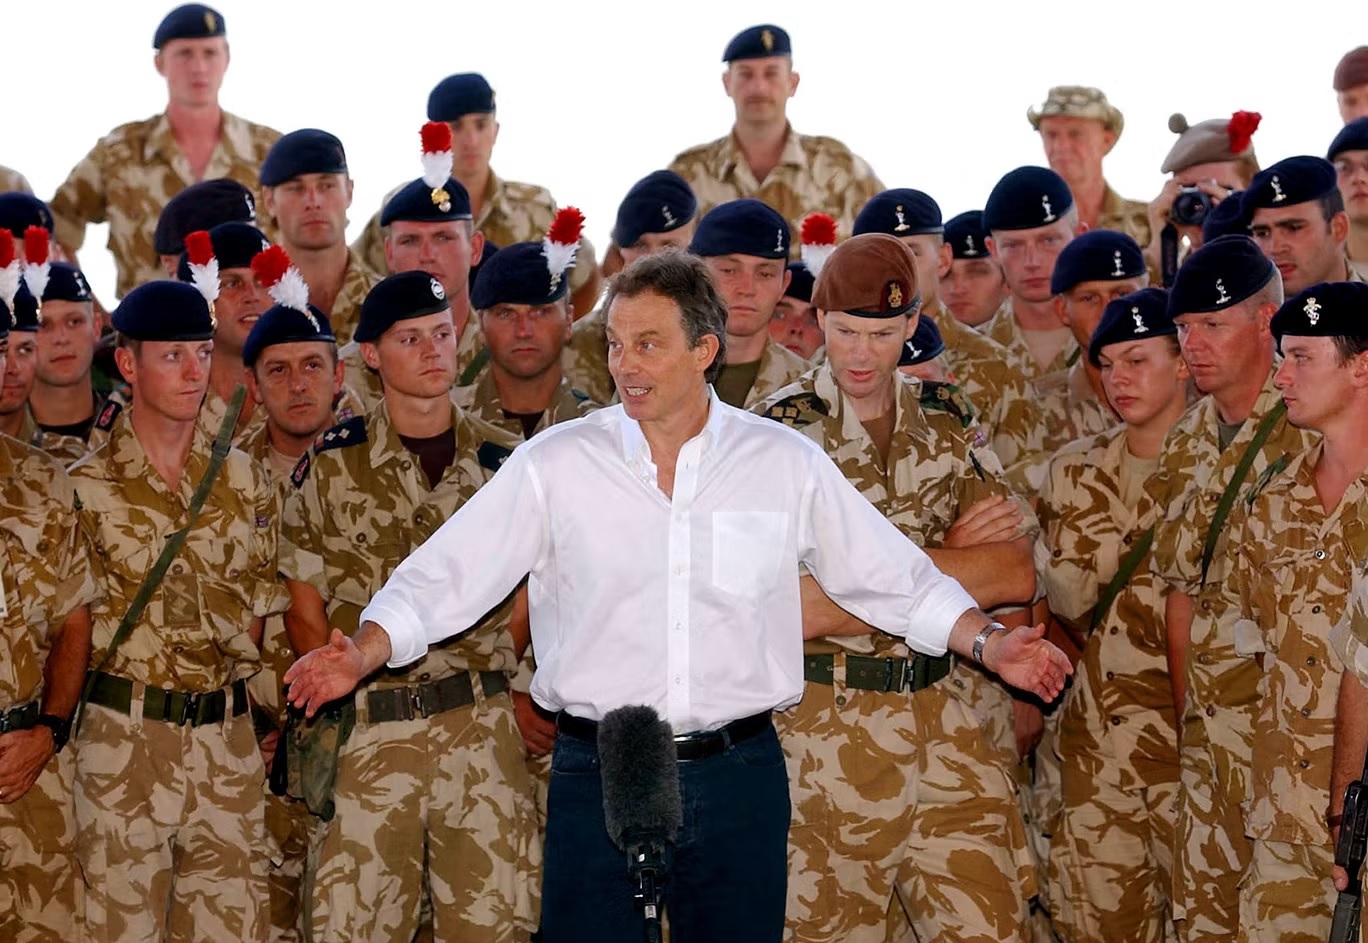 رئيس الوزراء البريطاني في حينها توني بلير يخاطب القوات البريطانية في البصرة، جنوب العراق، 29 مايو 2003 (رويترز)